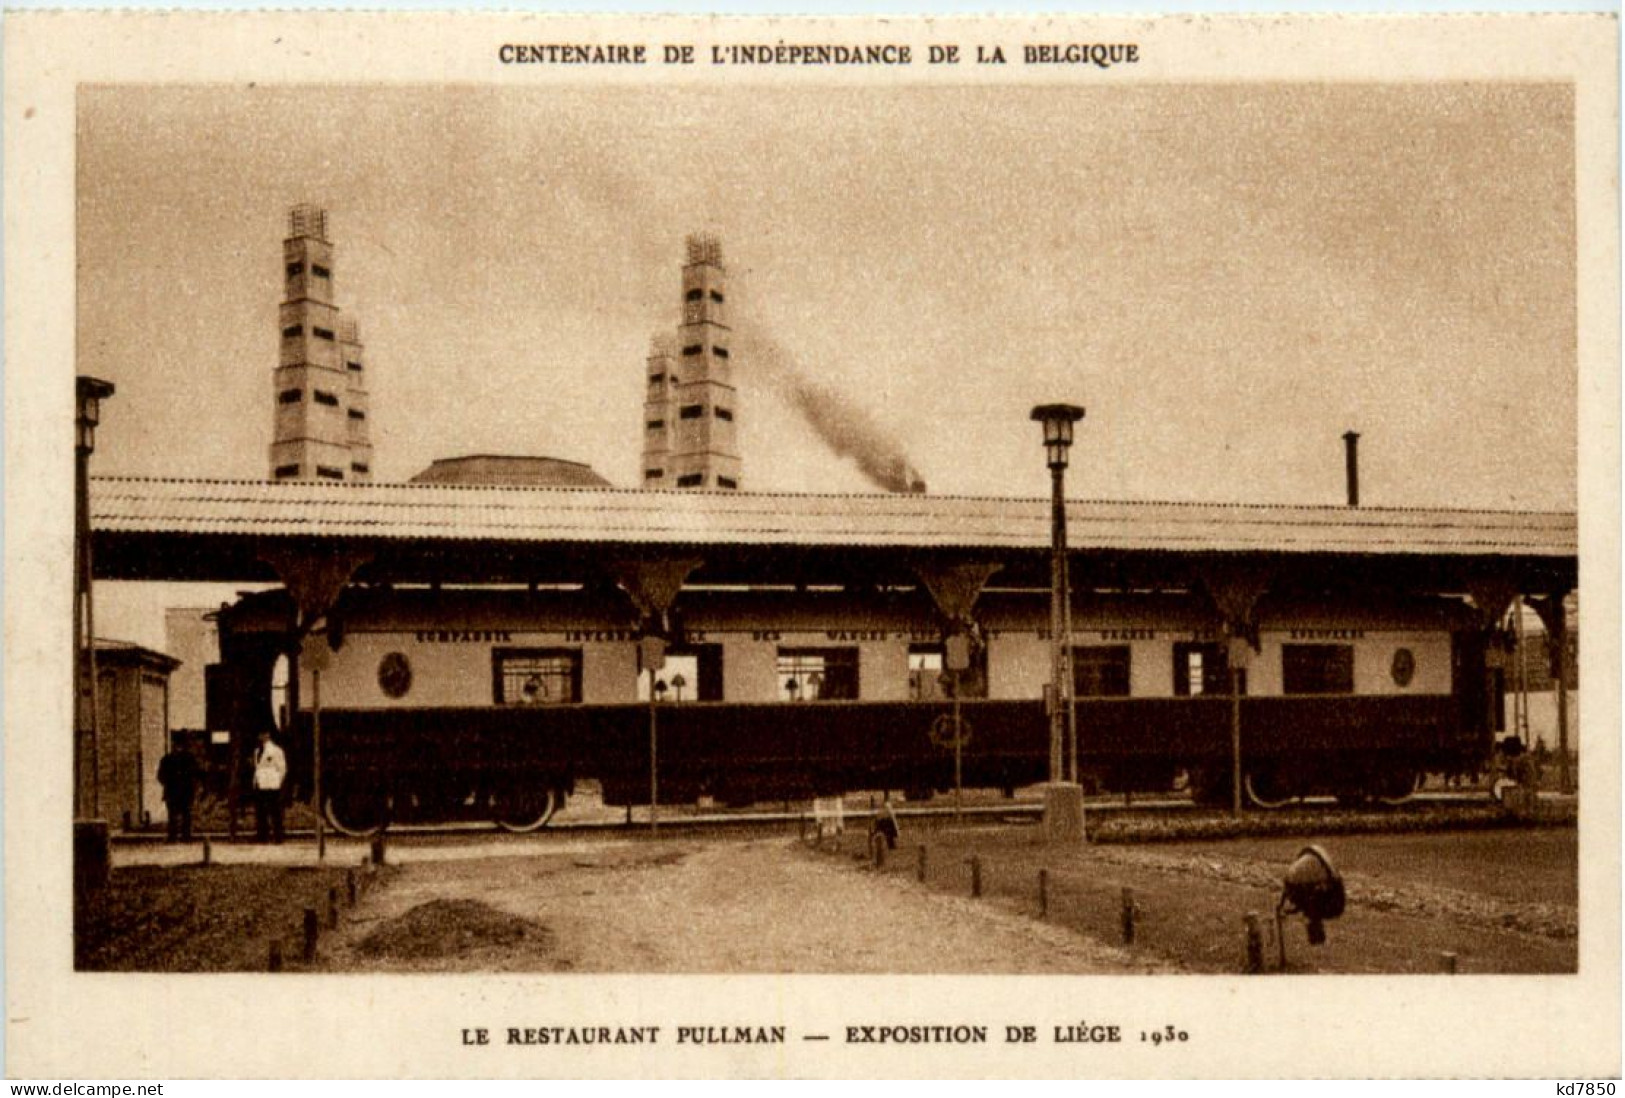 Exposition De Liege 1930 - Le Restaurant Pullman - Liege